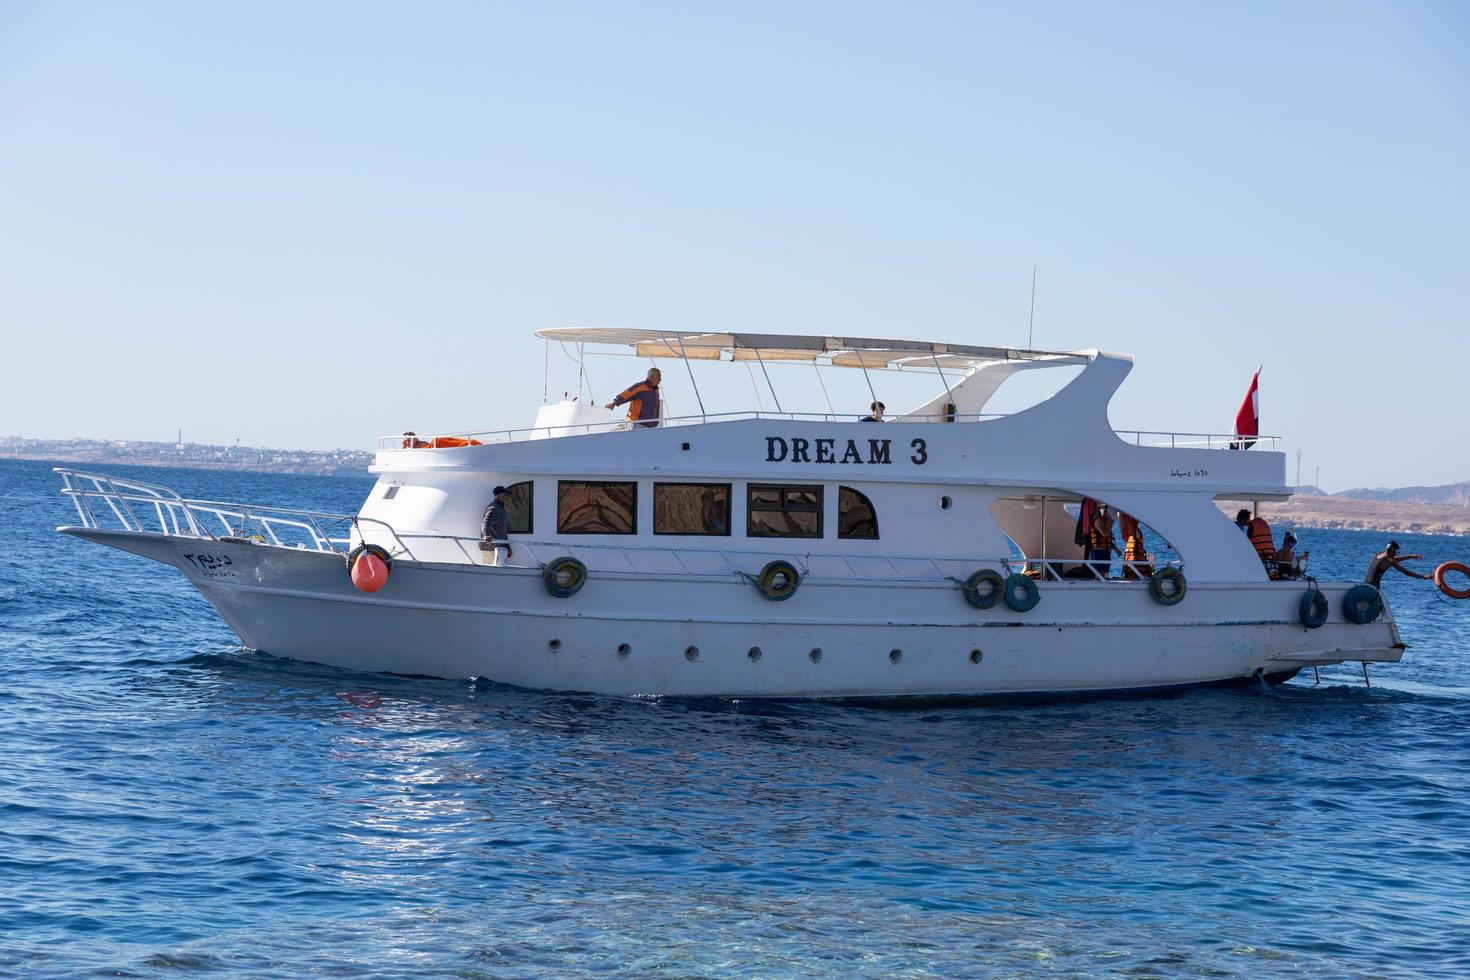 sharm el sheikh, egipto - 21 de enero de 2021 - barco turístico de placer con pasajeros utilizados para bucear en el mar rojo foto